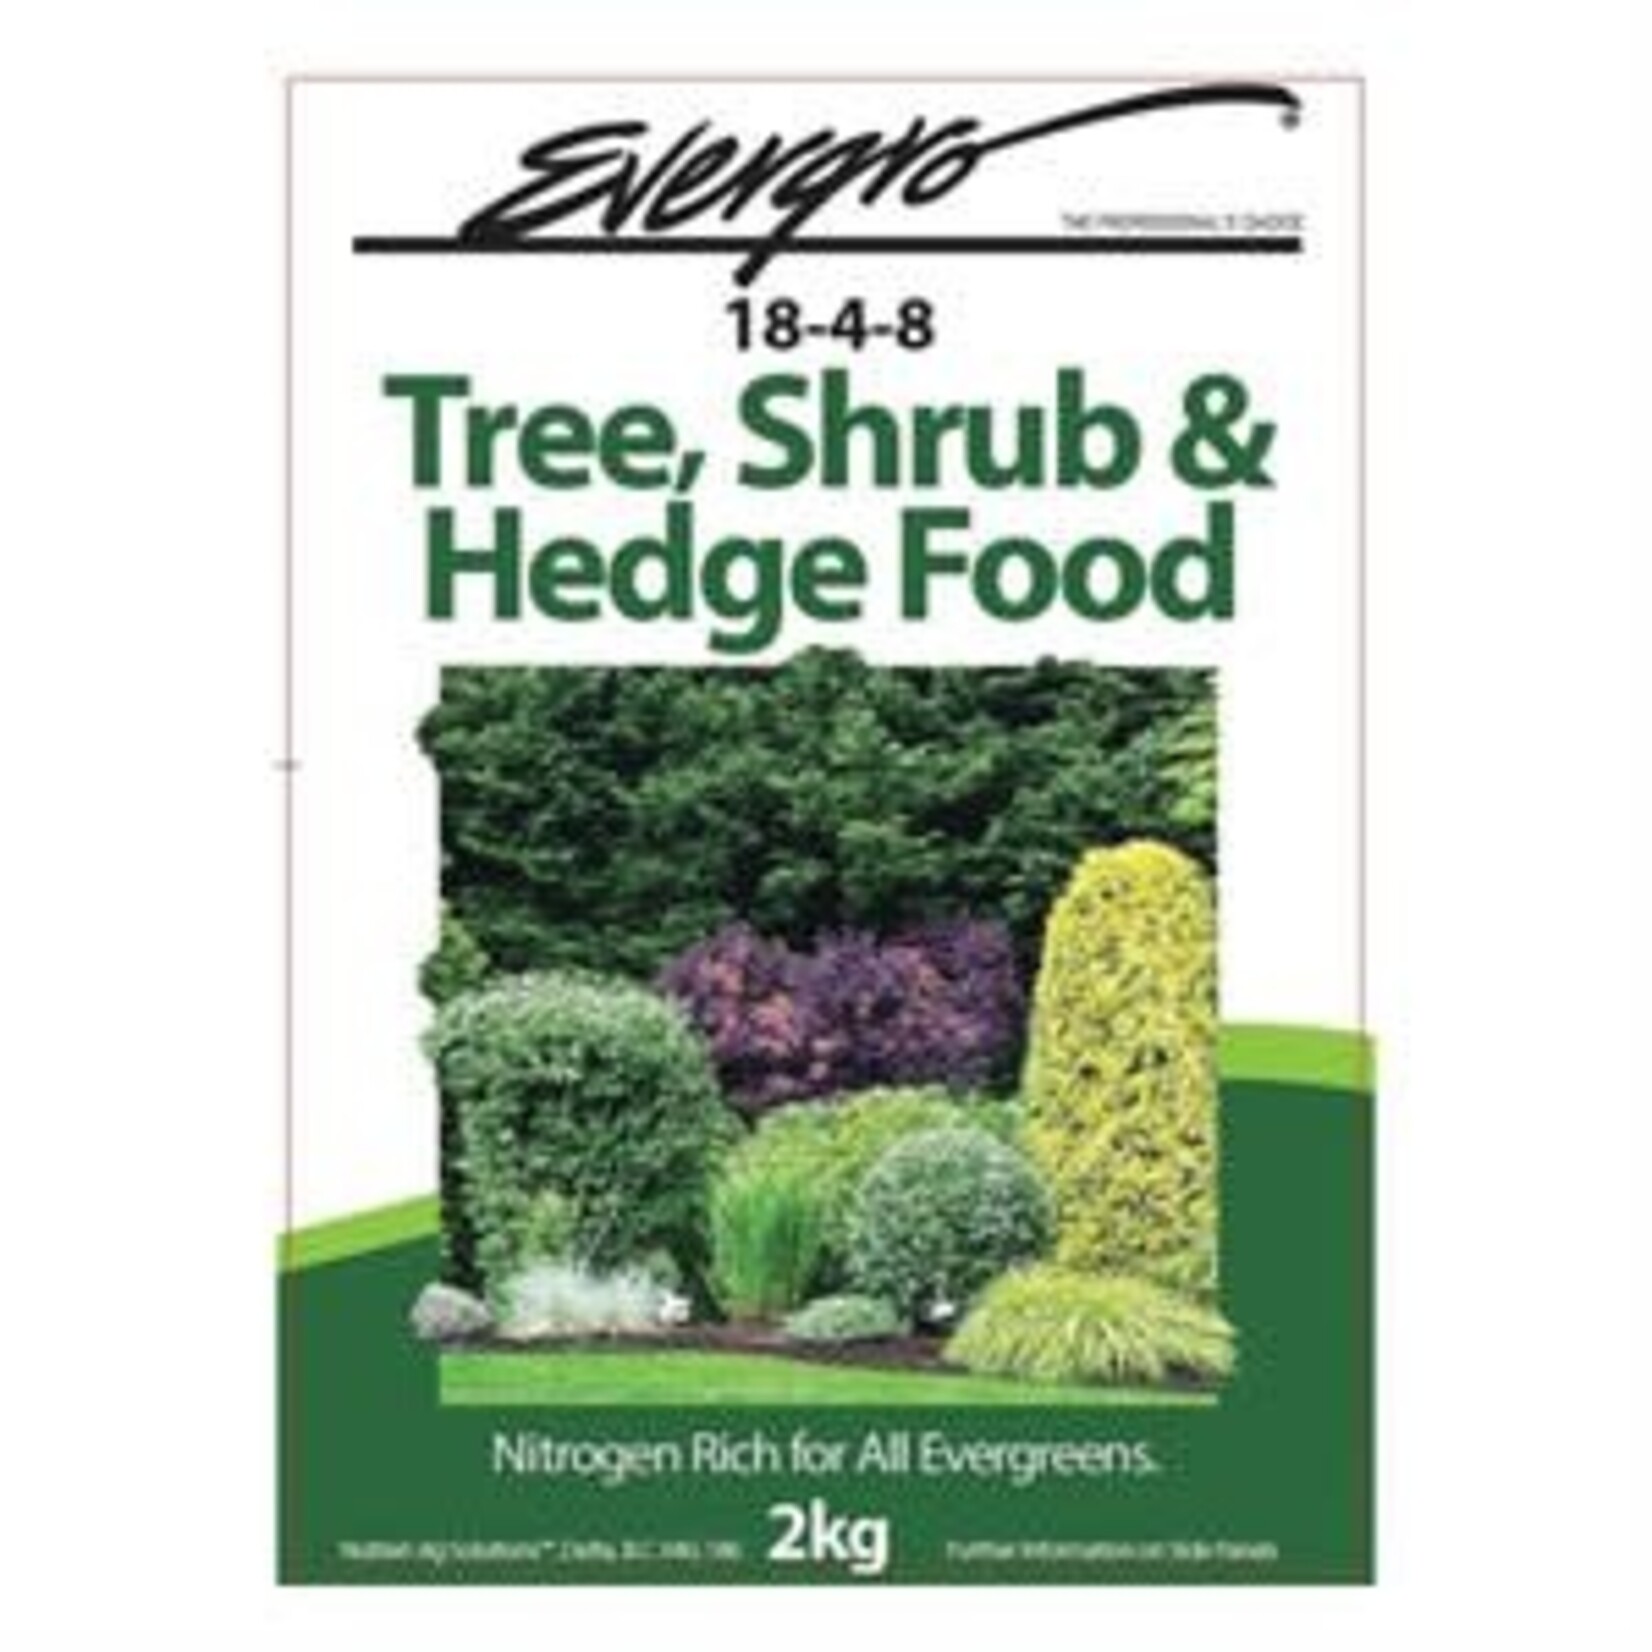 EDDIS Evergro Tree, Shrub & Hedge 18-4-8 2kg